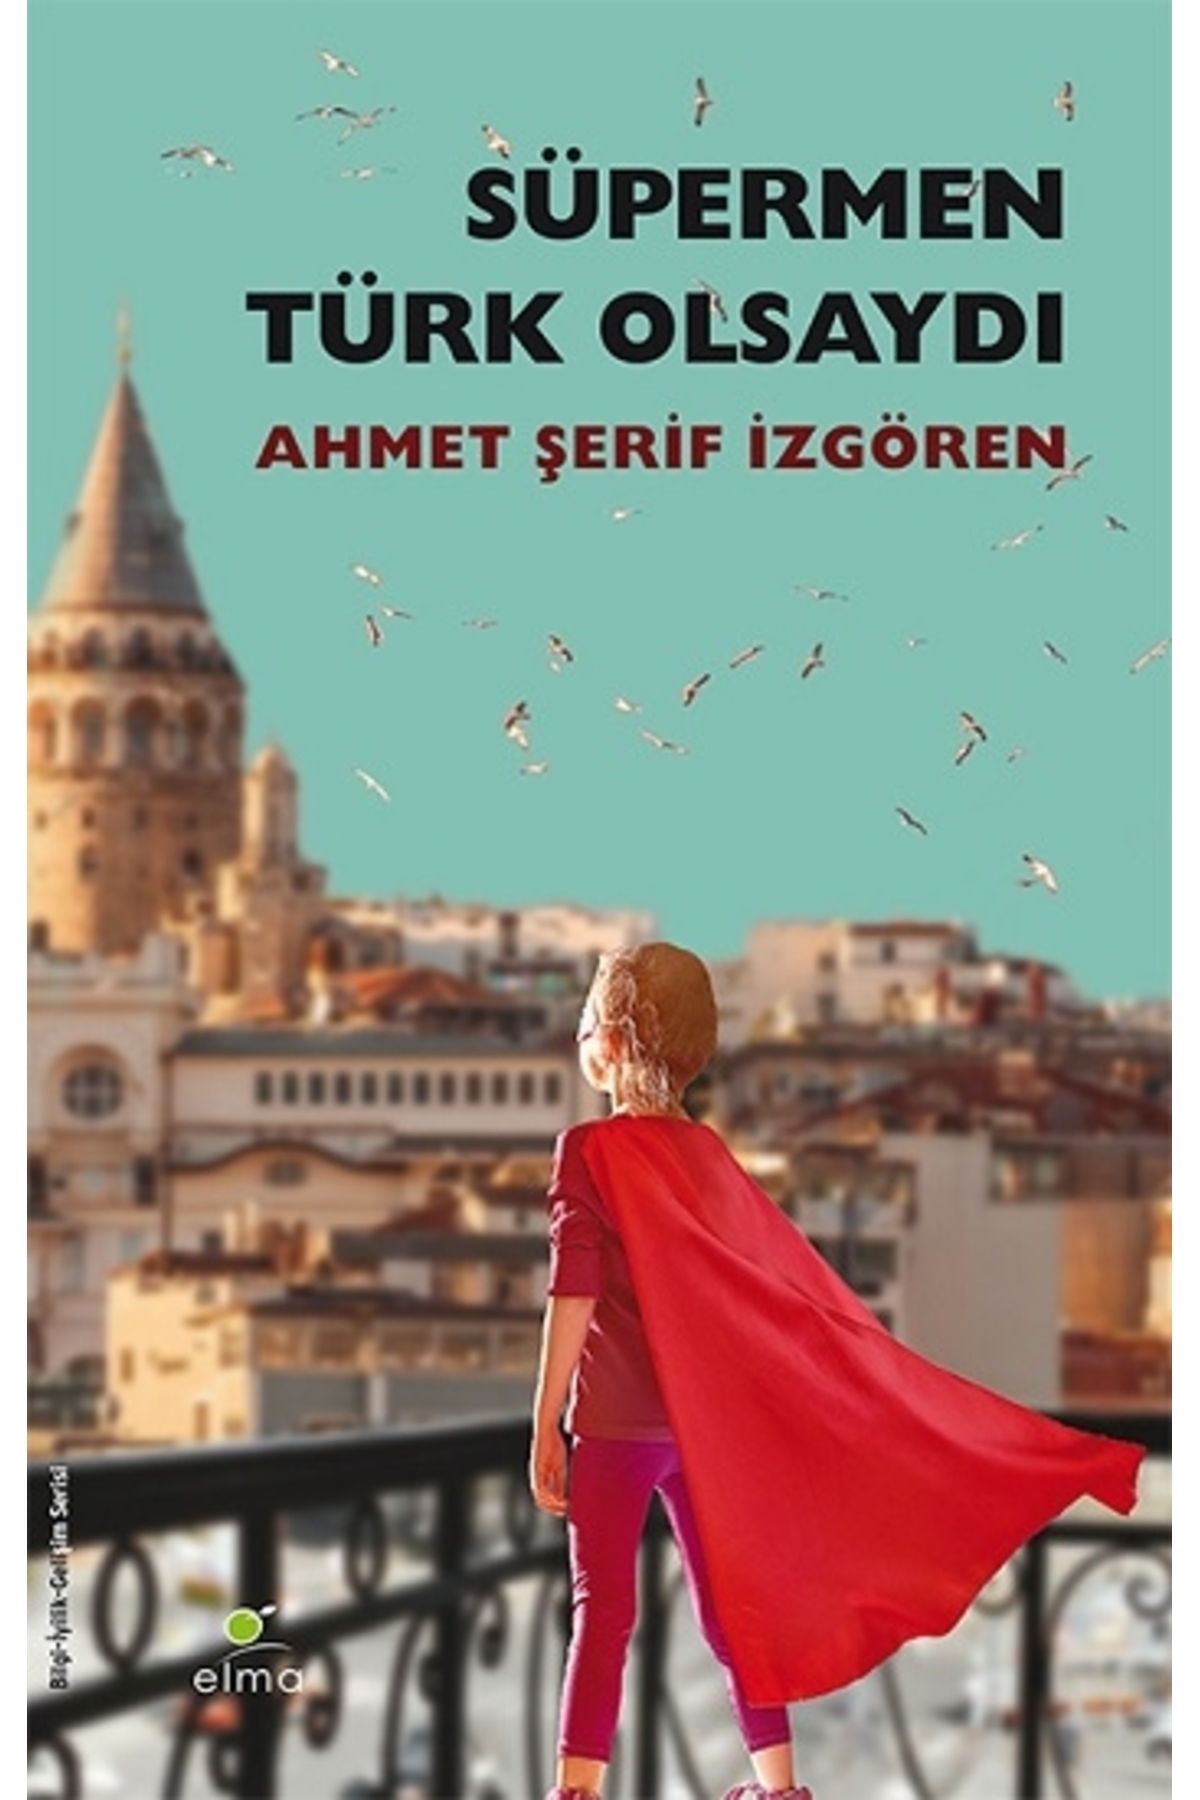 ELMA Yayınevi Süpermen Türk Olsaydı